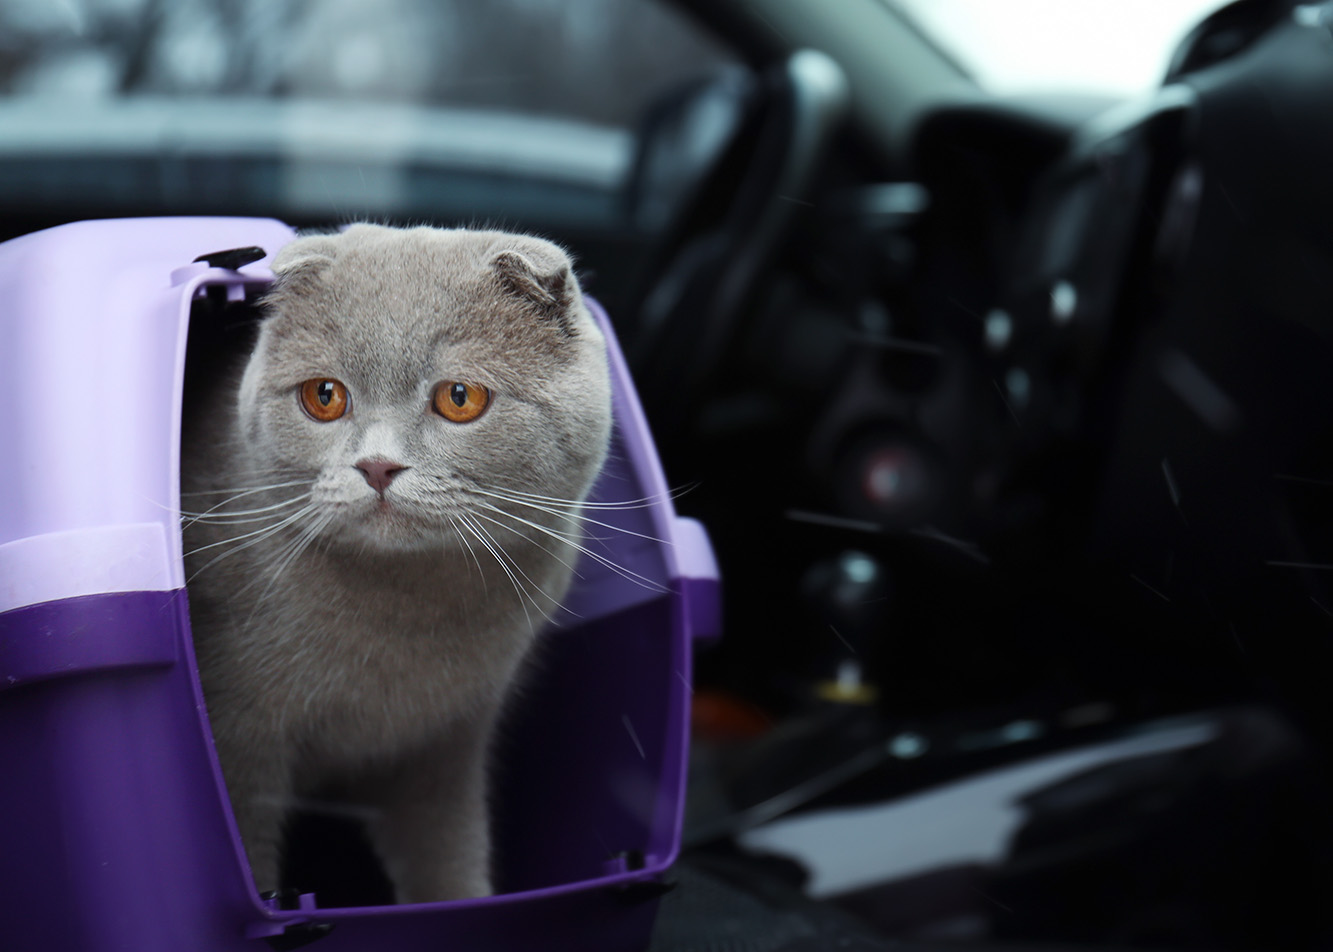 Choroba lokomocyjna u kota – co podać kotu do jedzenia w podróży?